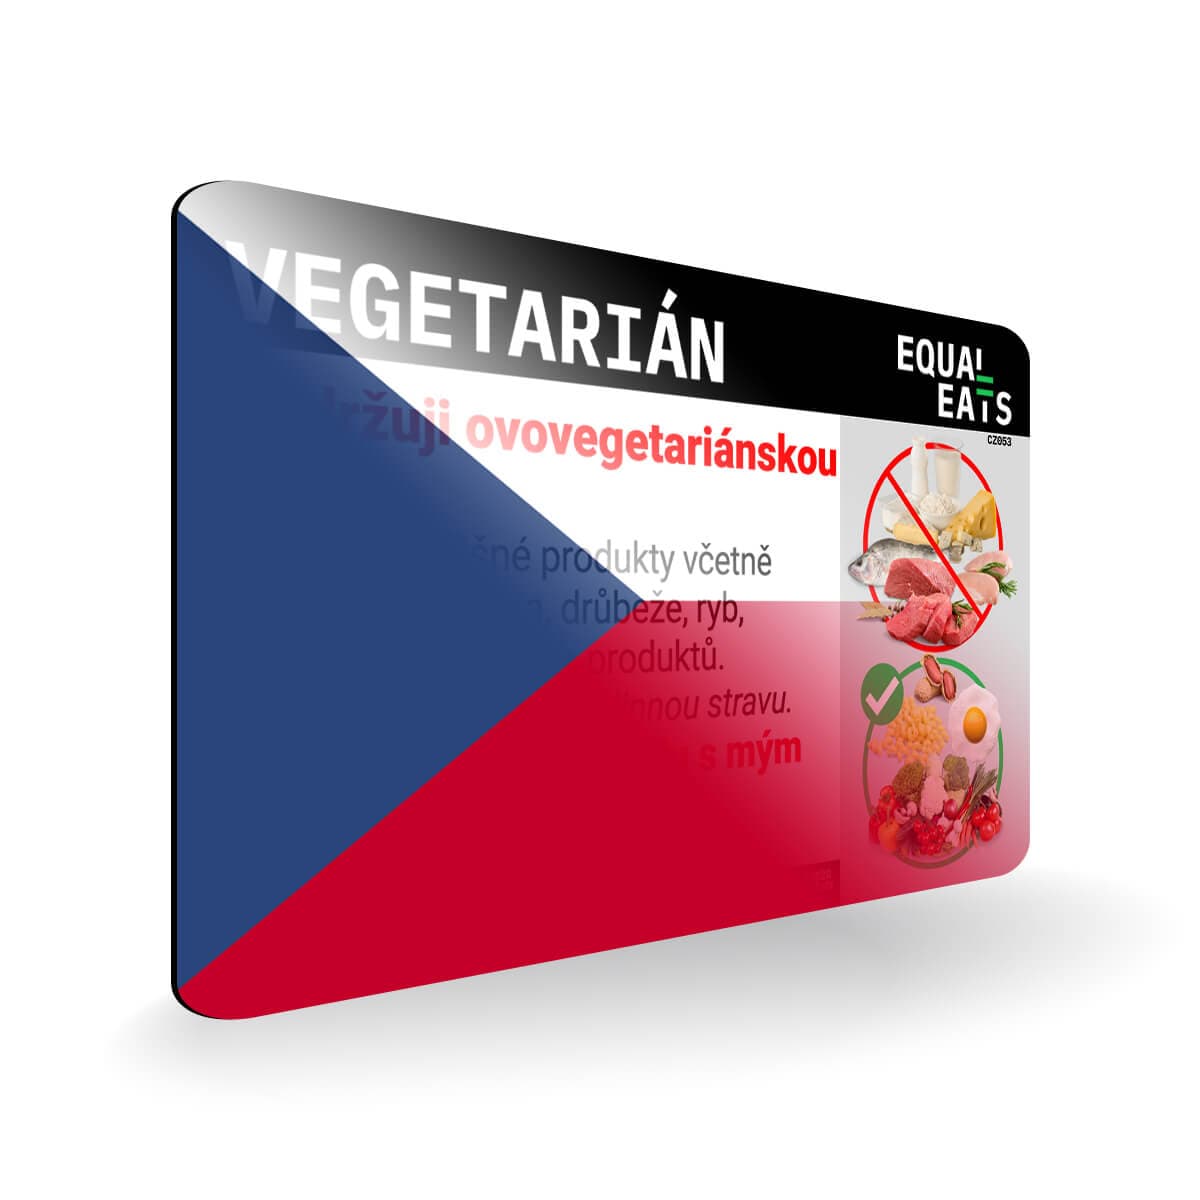 Ovo Vegetarian in Czech. Card for Vegetarian in Czech Republic